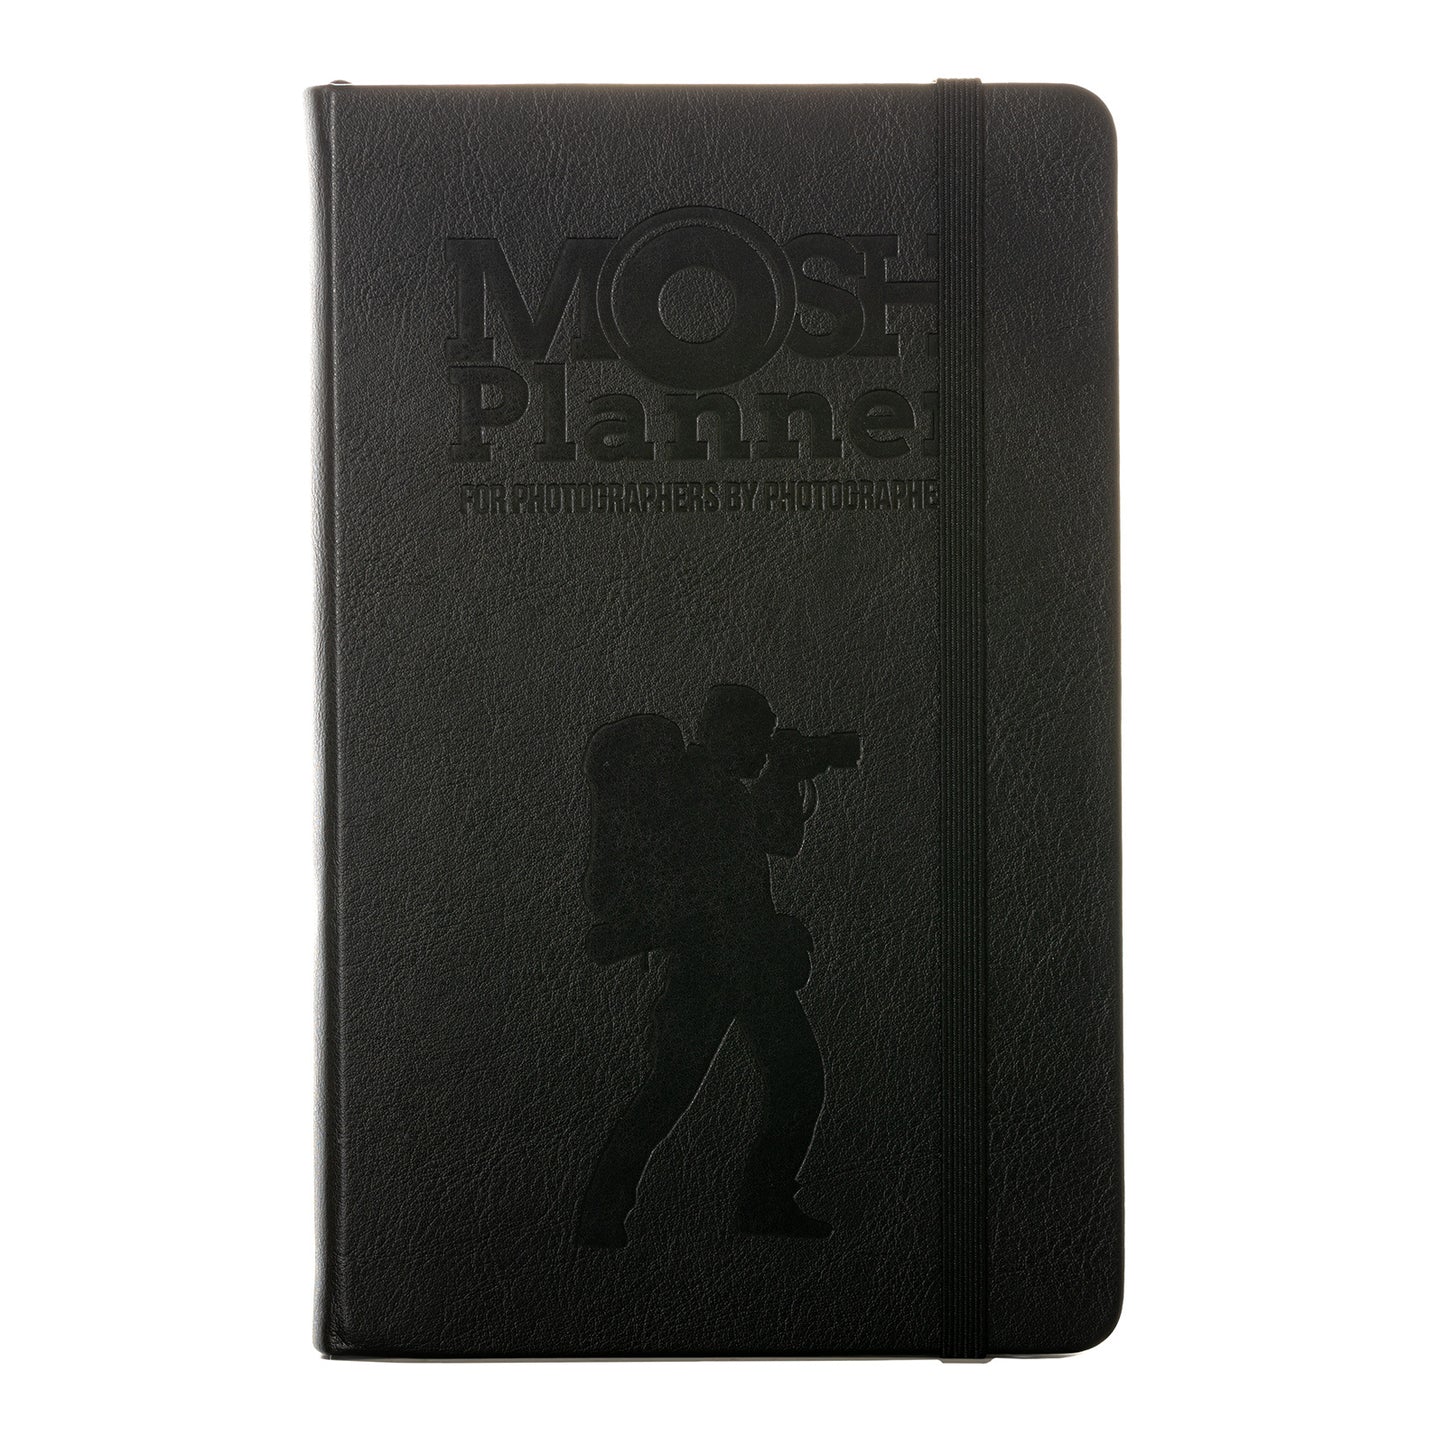 MOSH Planner Pro Bundle (BFCM Deal)